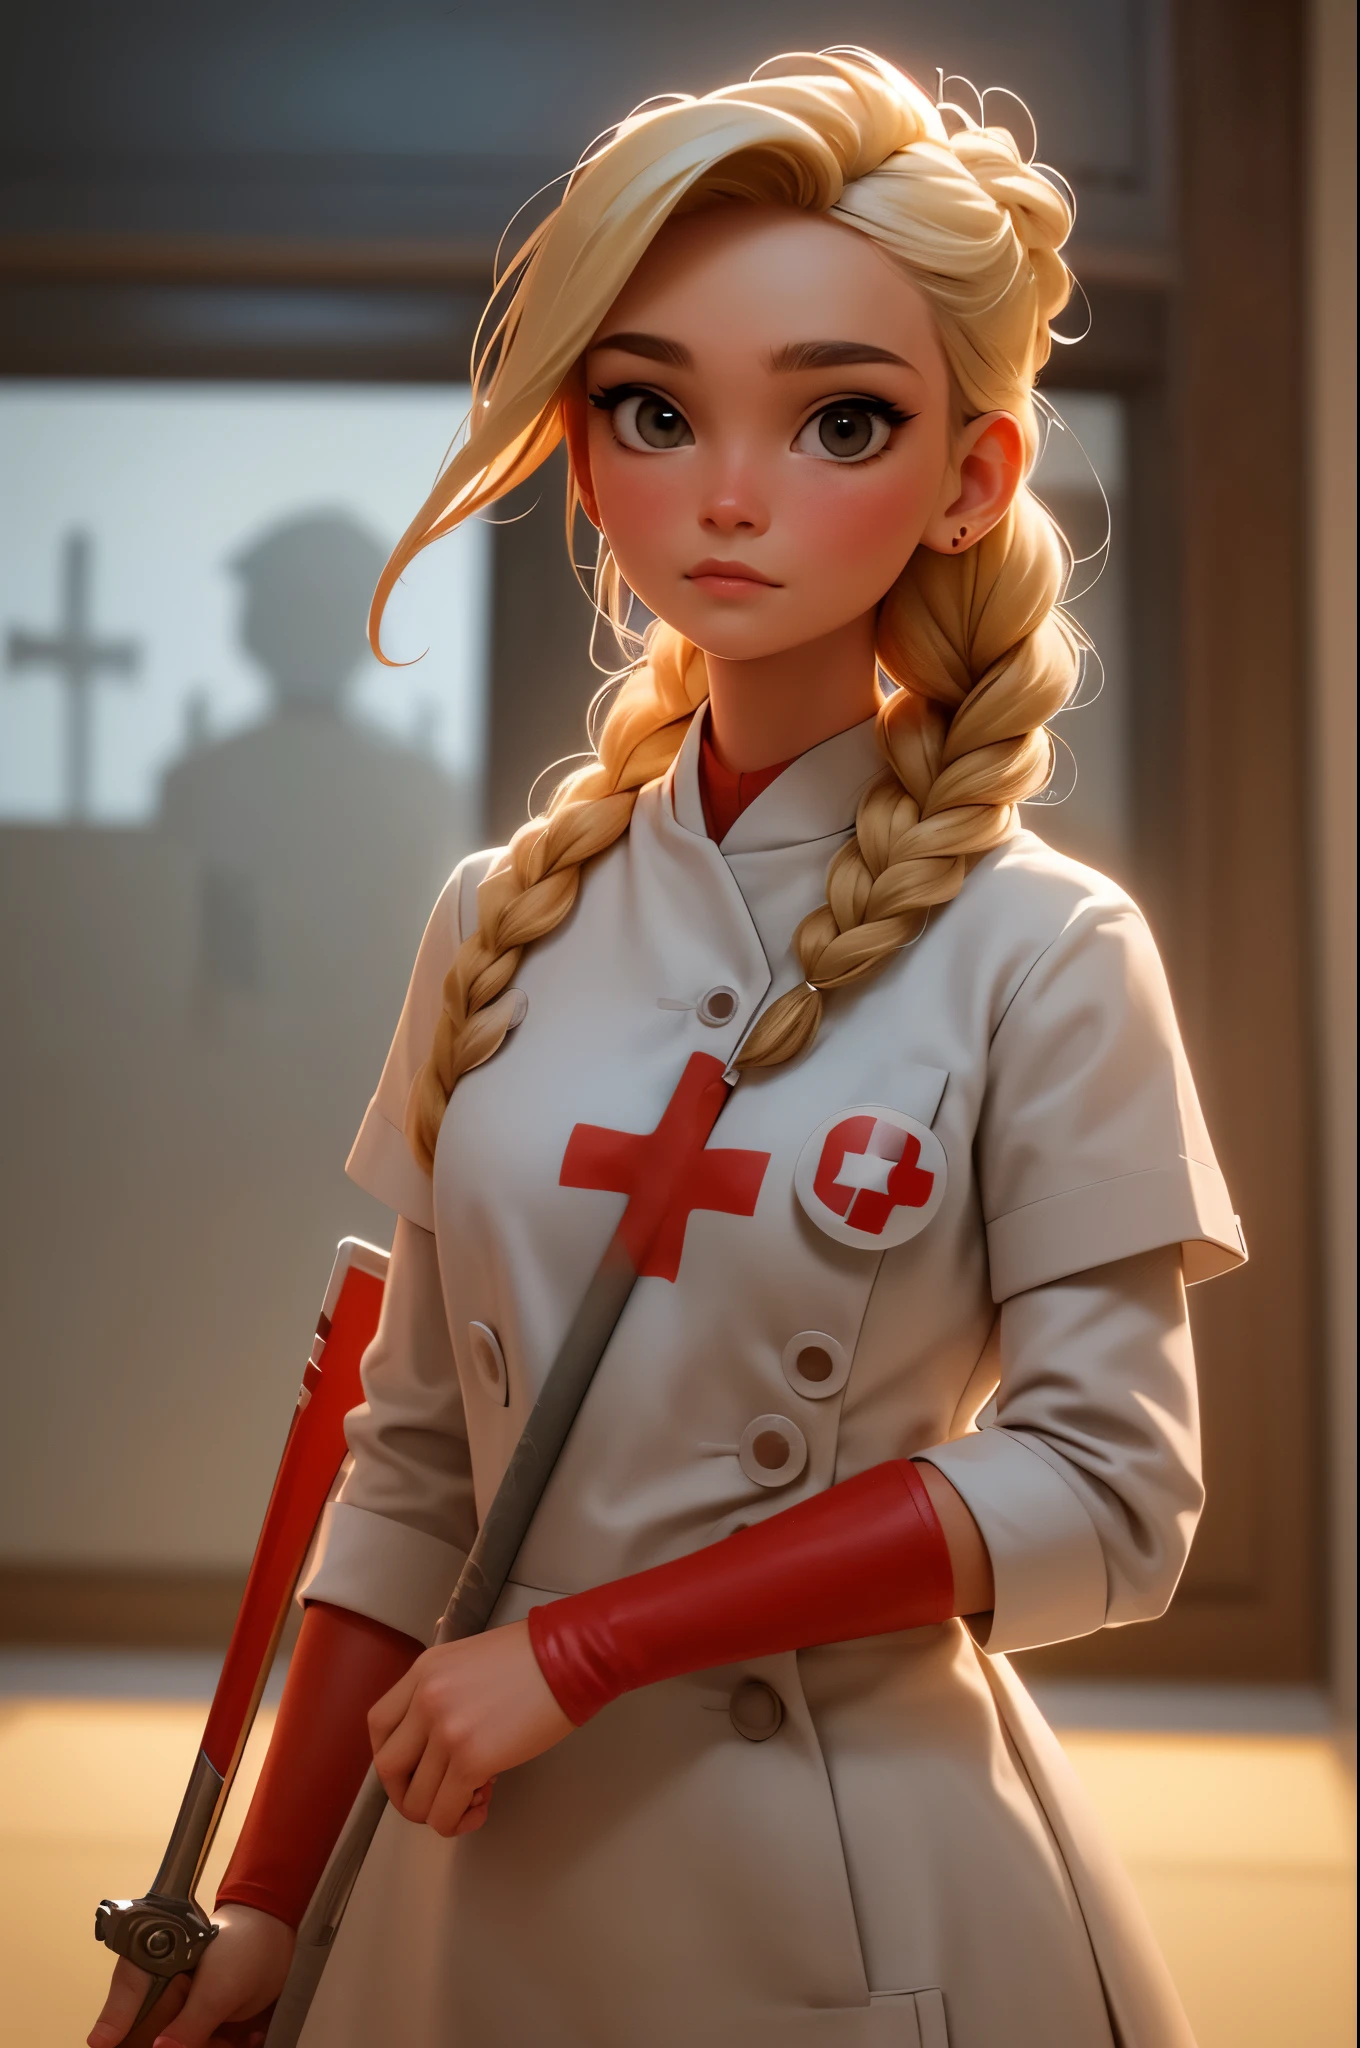 1fille, cheveux blonds tressés, Warrior infirmière with sword on the battlefield, habillé de cuir blanc brillant avec le symbole de la Croix Rouge, infirmière.